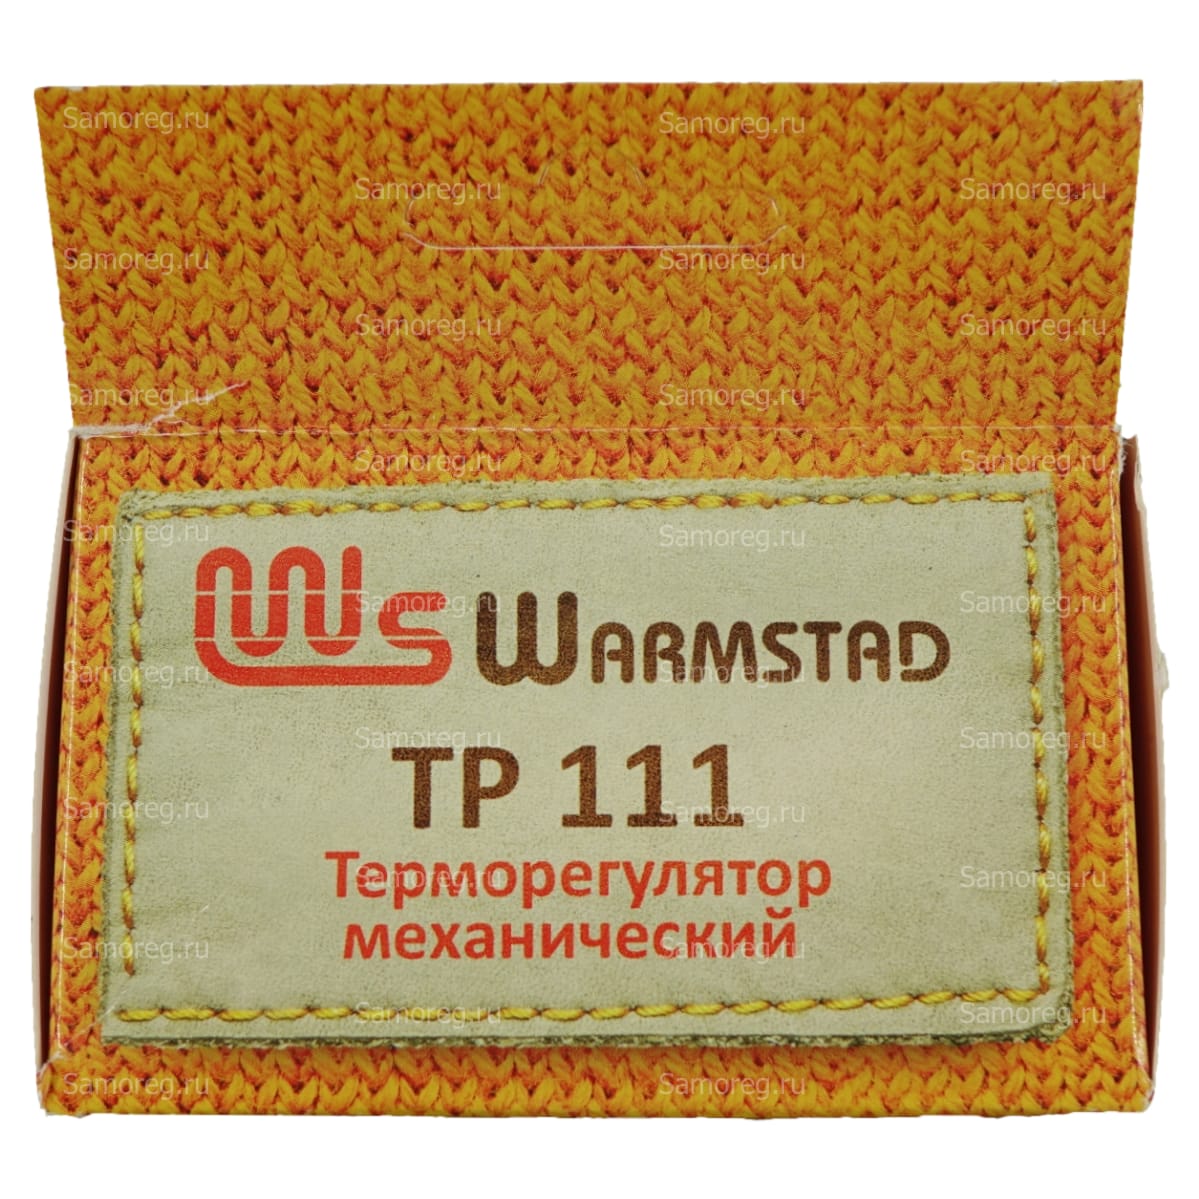 Терморегулятор Warmstad ТР 111 белый